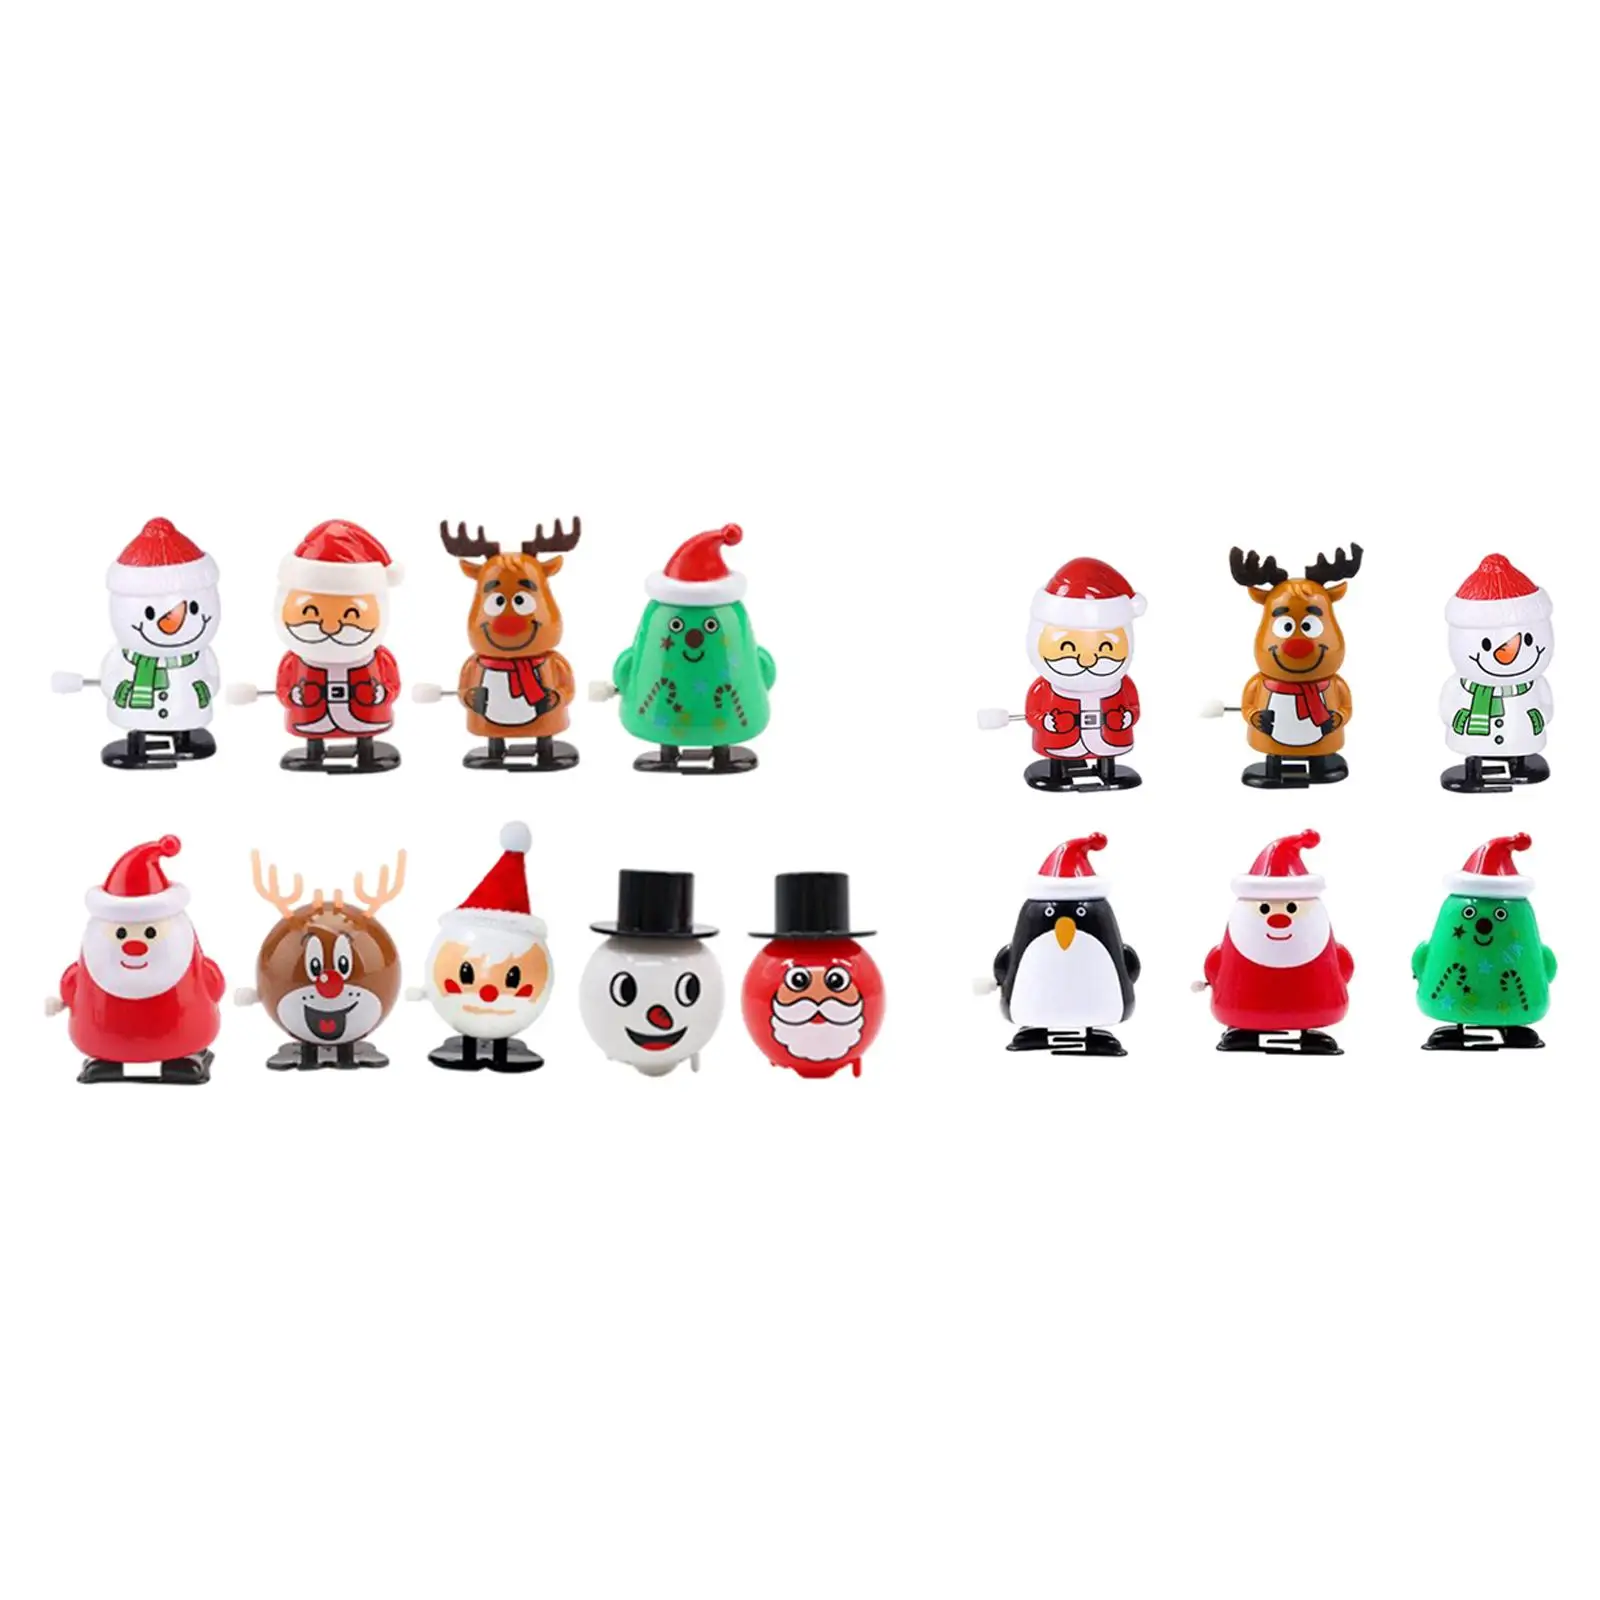  Toys, Filler,Figure Ornaments Christmas  Clockwork Toys Jumping Toys for  Favors Kids Children